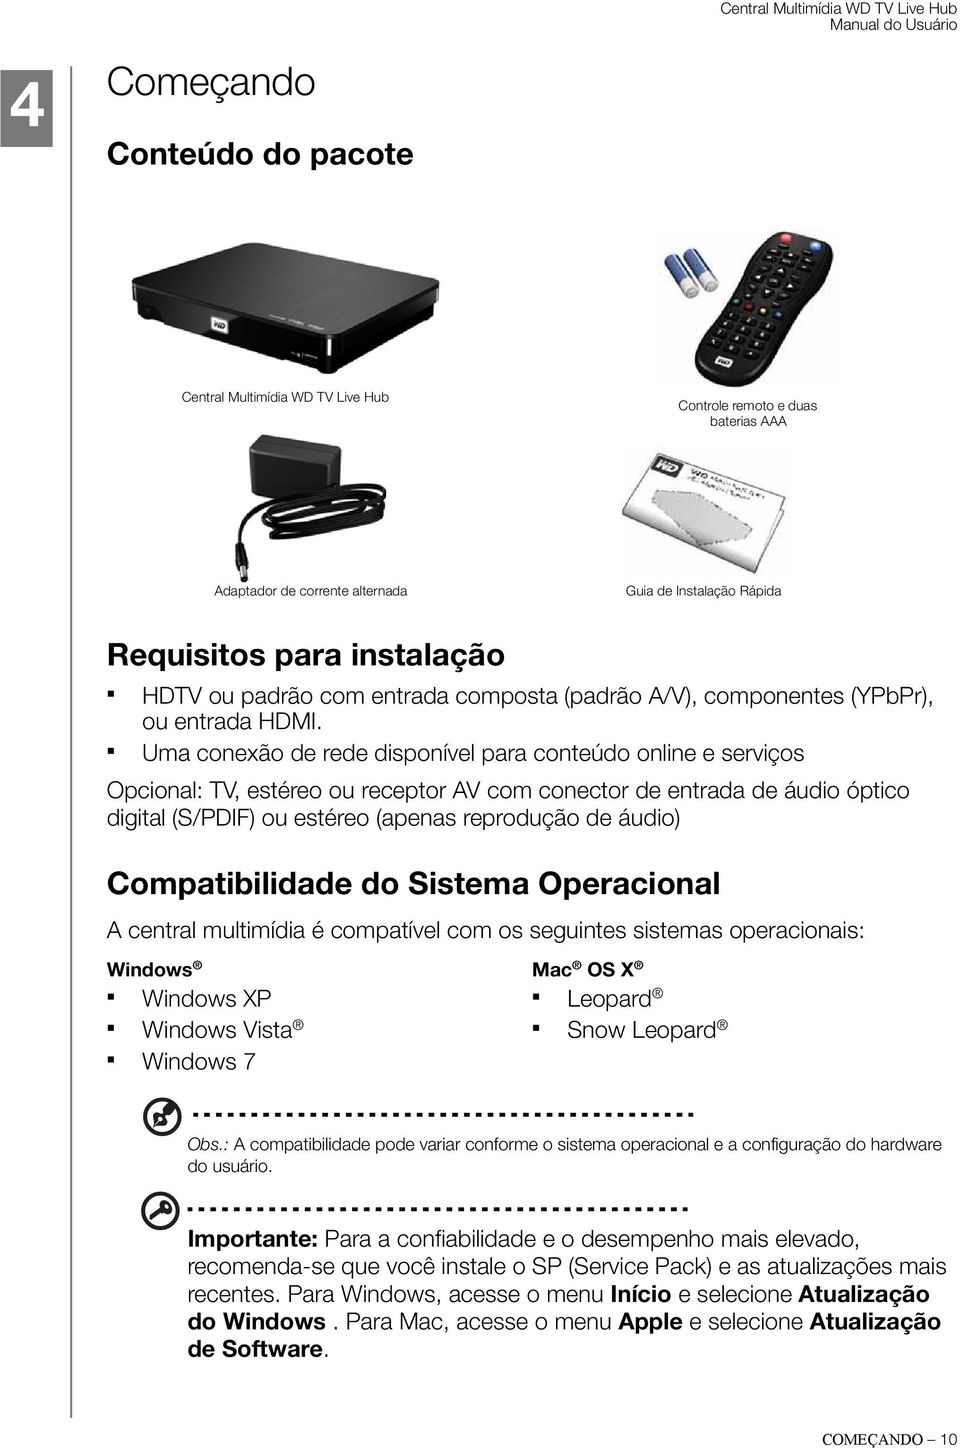 Uma conexão de rede disponível para conteúdo online e serviços Opcional: TV, estéreo ou receptor AV com conector de entrada de áudio óptico digital (S/PDIF) ou estéreo (apenas reprodução de áudio)